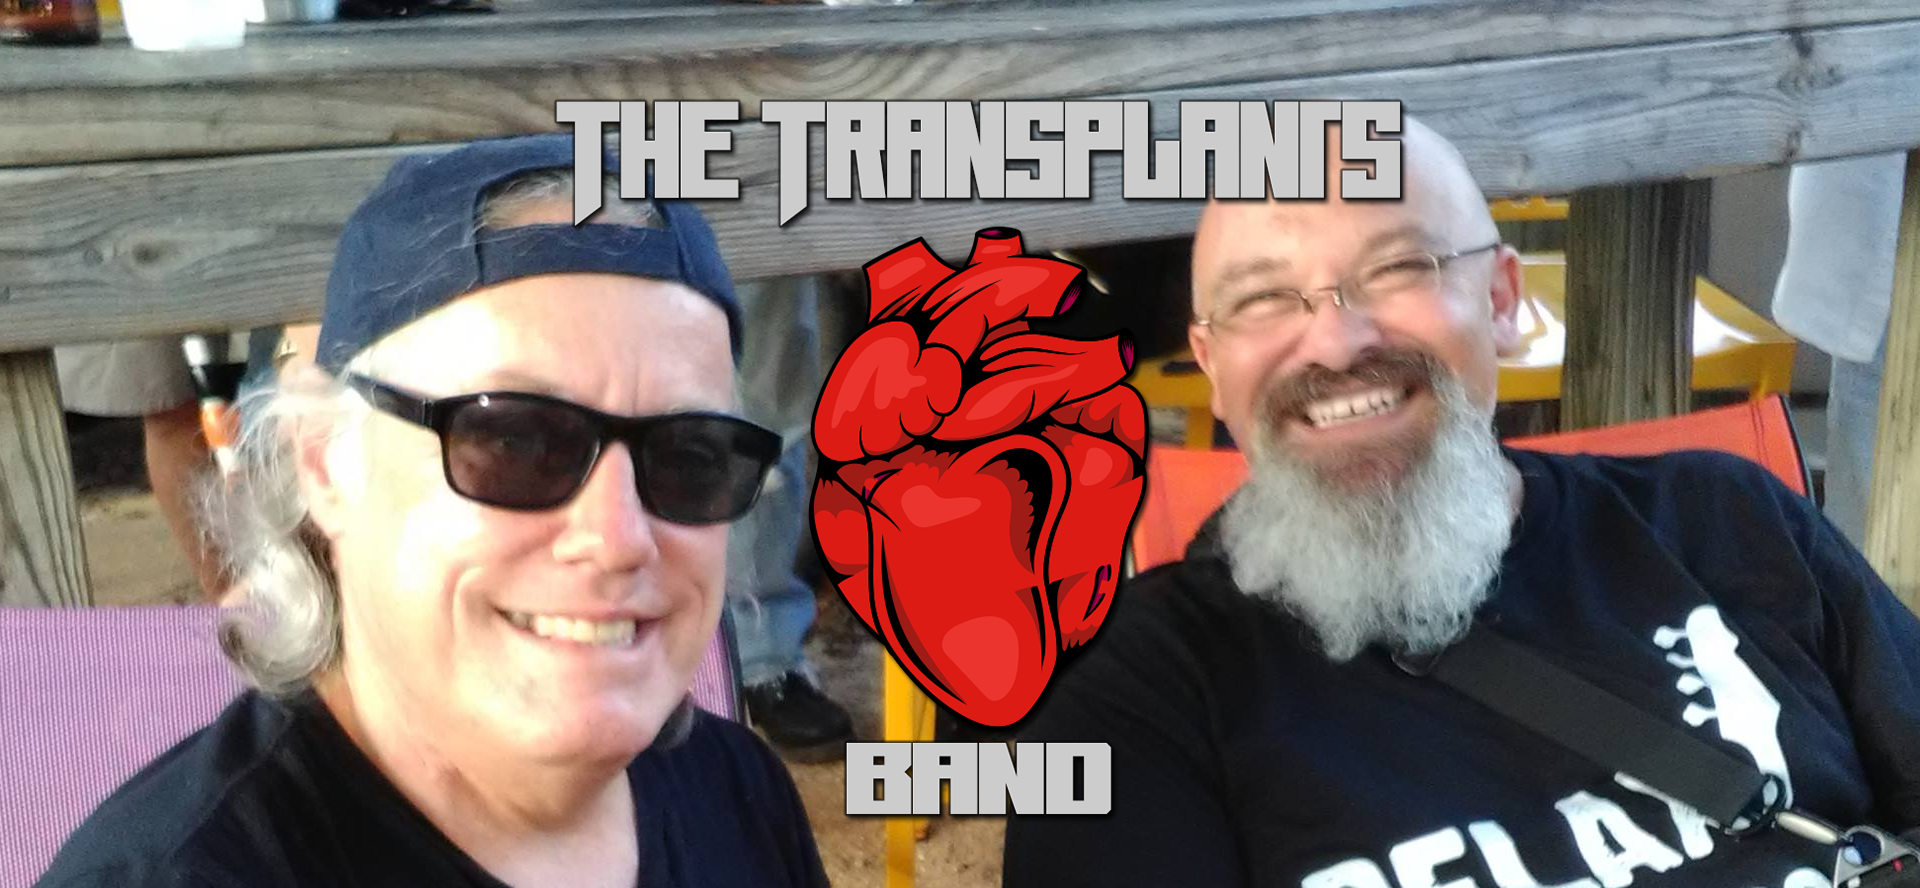 The Transplants Band Joe and Brian